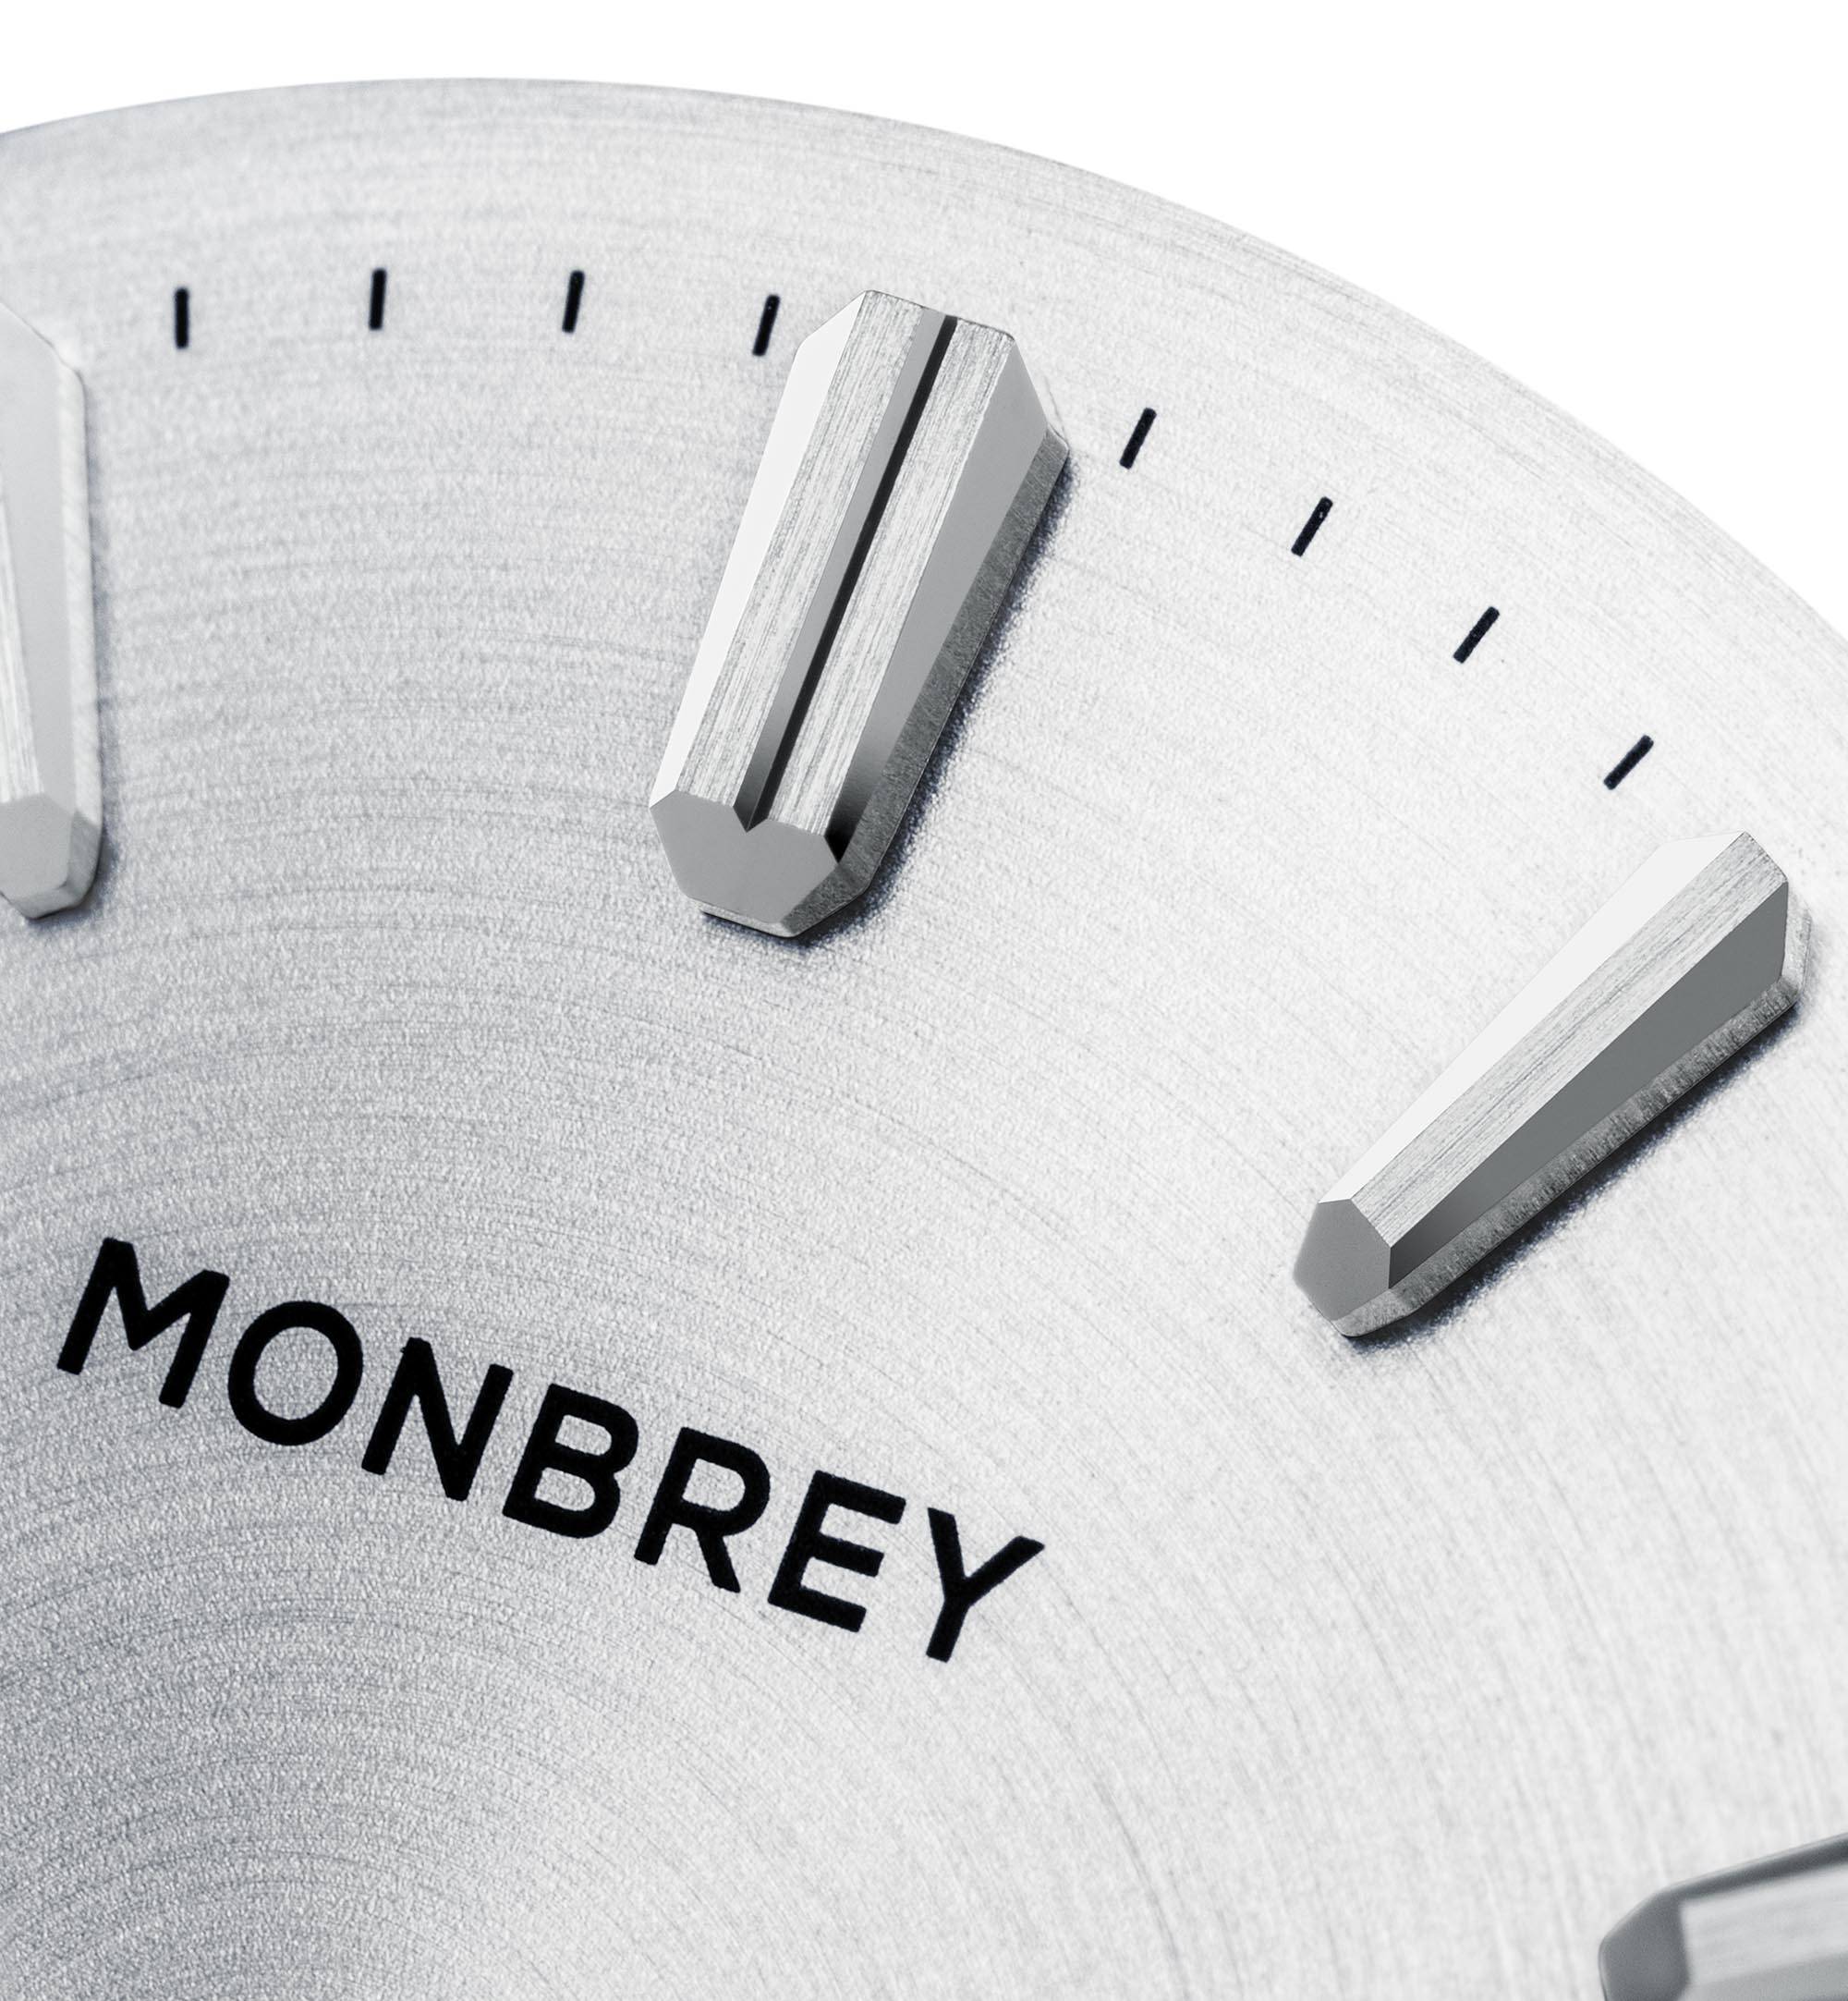 Monbrey MB1 — антимагнитные механические часы